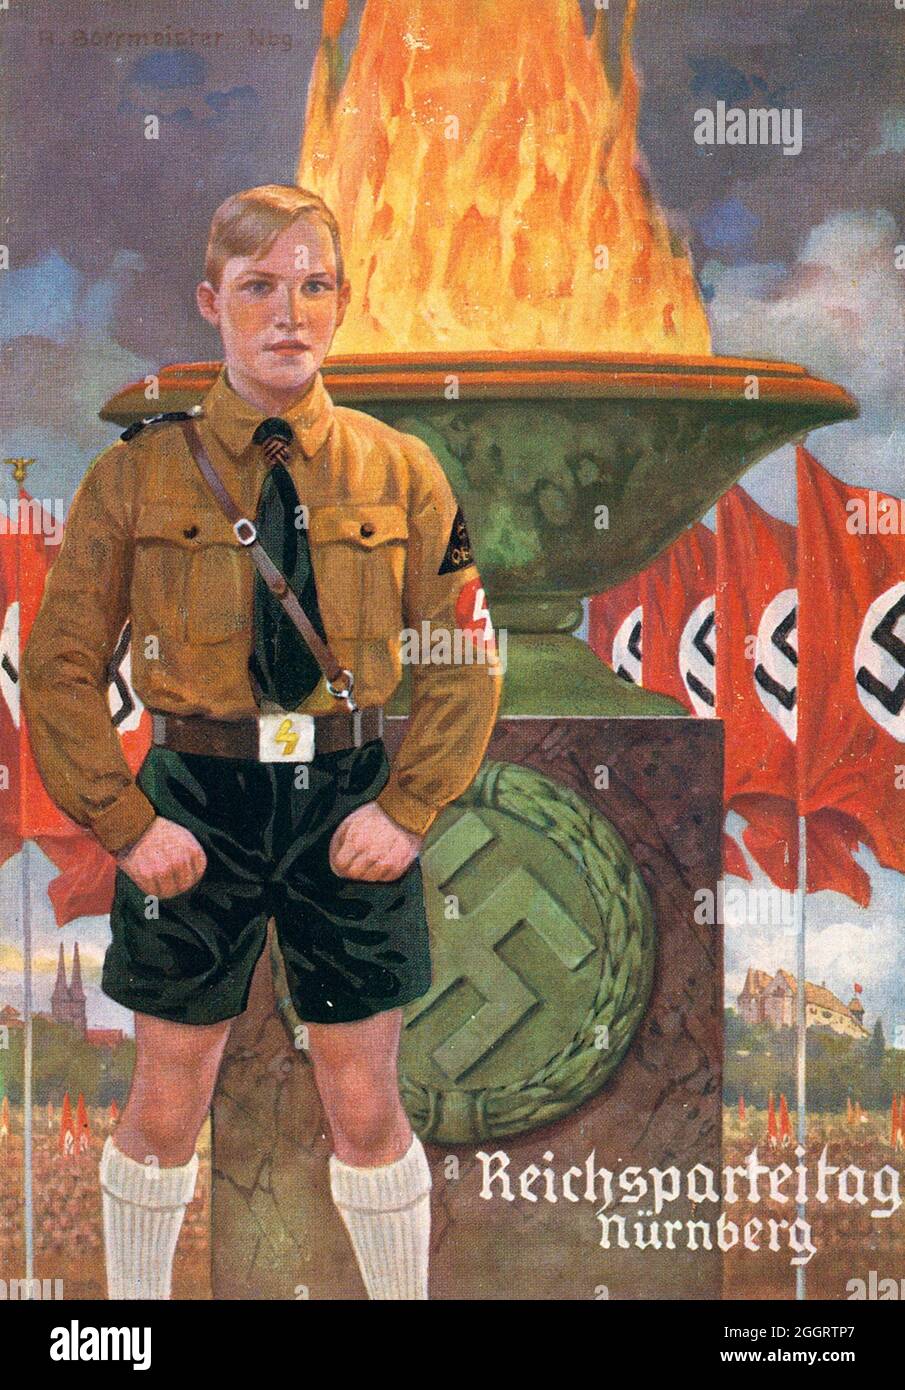 Ein Vintage-Plakat zur jährlichen Nazi-Nürnberger Kundgebung mit einem uniformierten Mitglied der Hitler-Jugend (HJ) Stockfoto